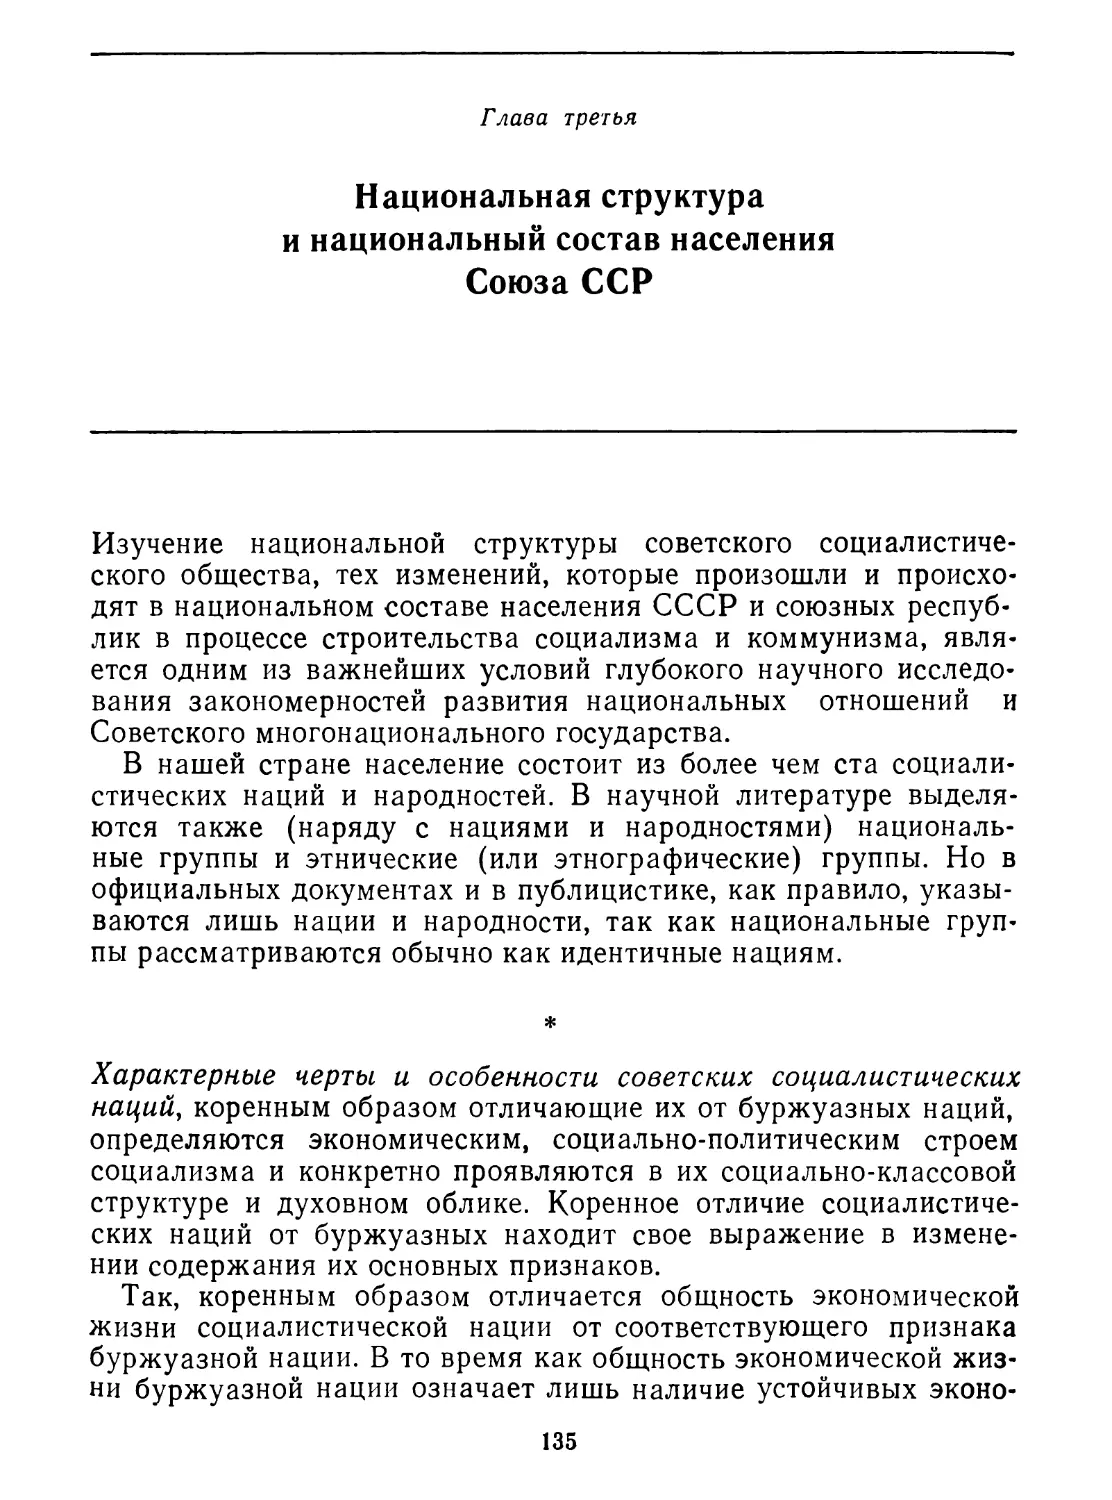 Глава третья. Национальная структура и национальный состав населения Союза ССР